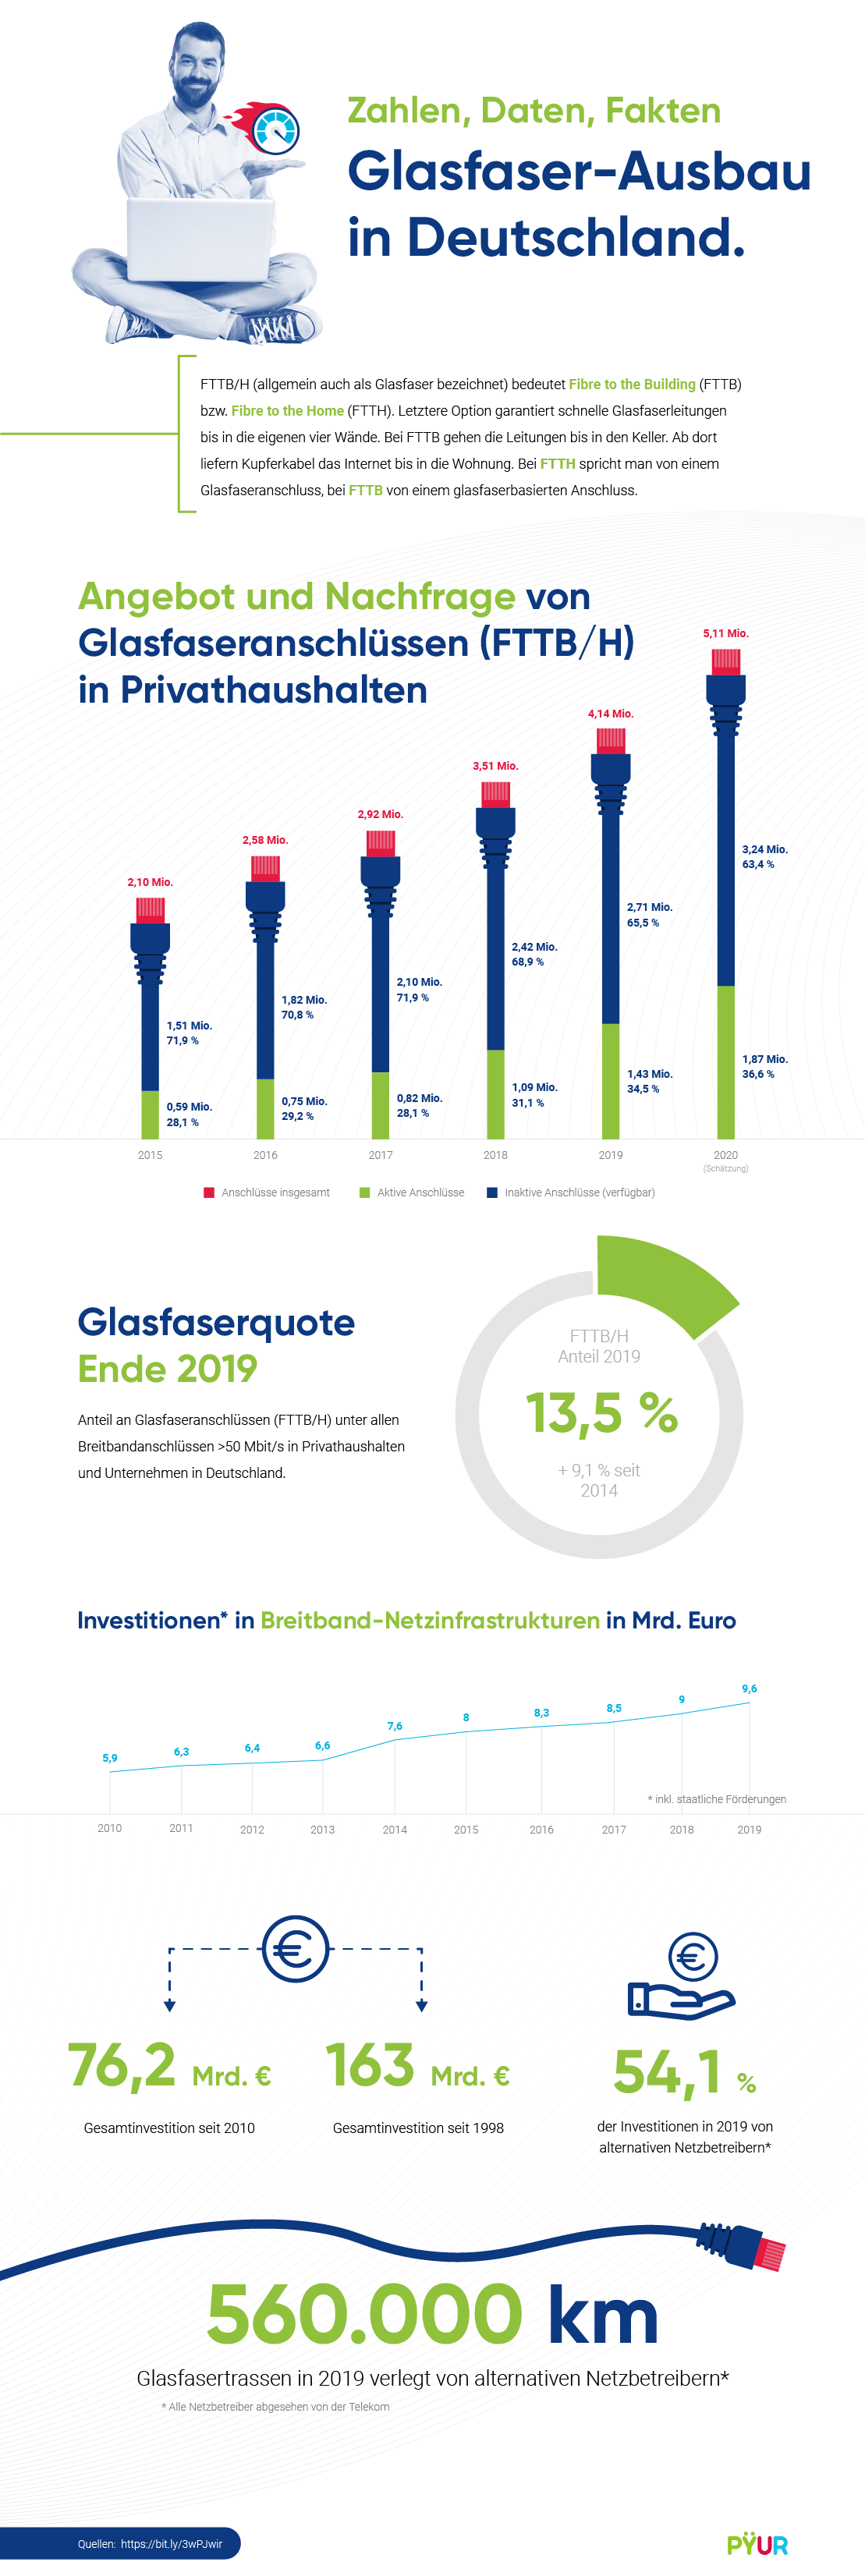 Infografik zum Glasfaser-Ausbau in Deutschland mit den wichtigsten Zahlen und Fakten